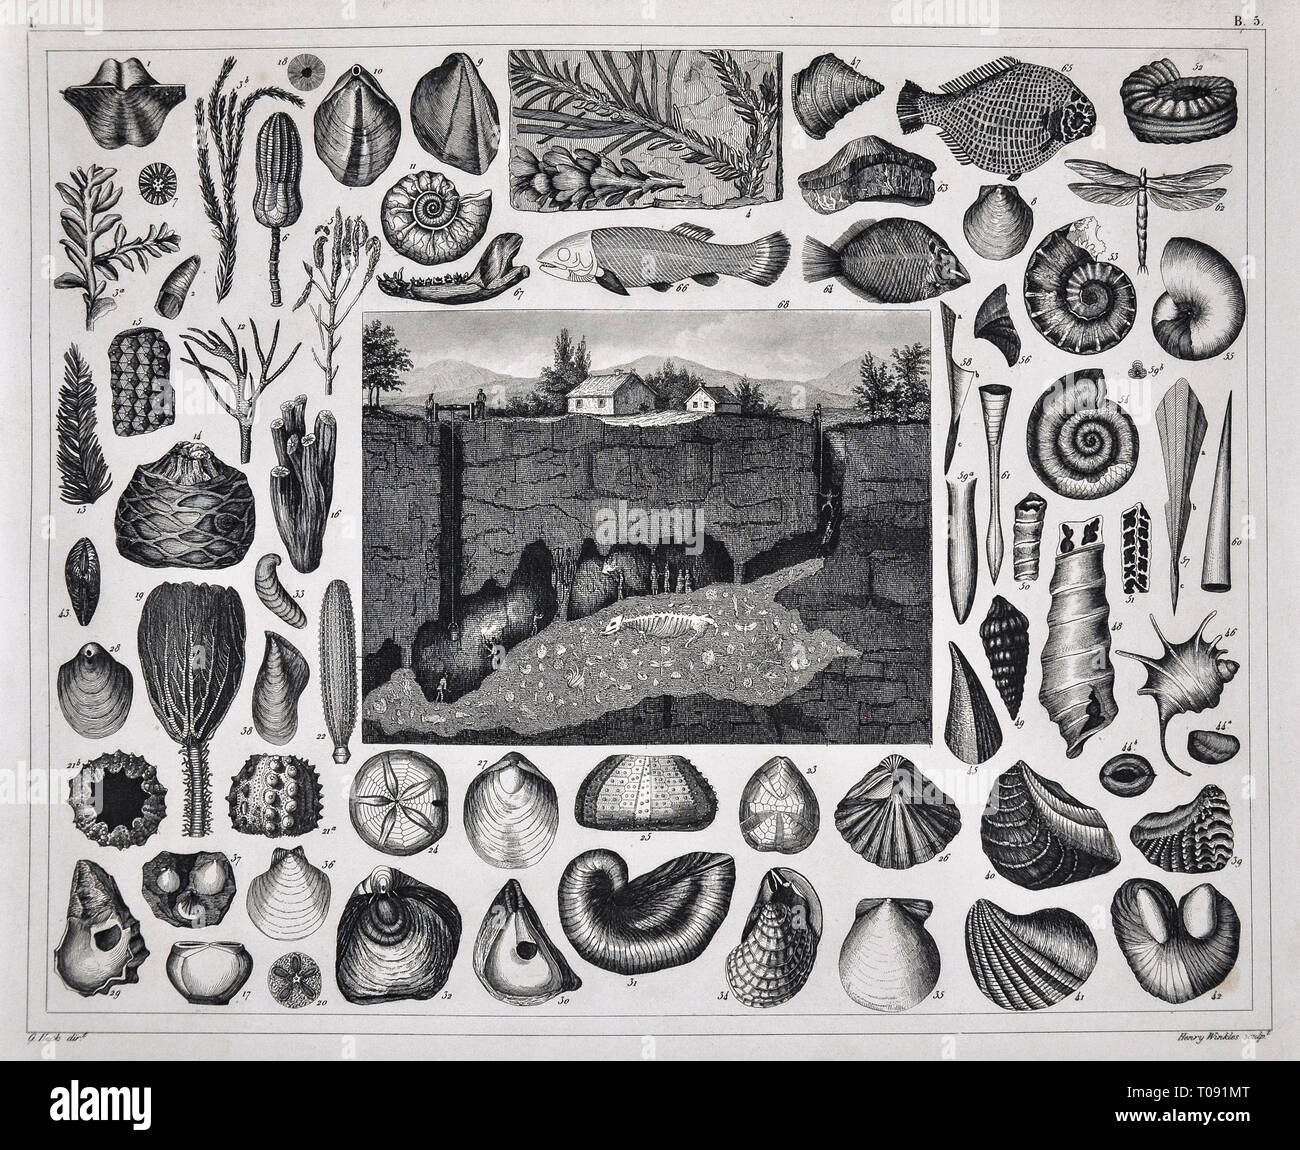 1849 Bilder Atlas Stampa - fossili preistorici di varie Precambrian conchiglie, pesci, coralli e una vista di una Grotta Fossile Foto Stock